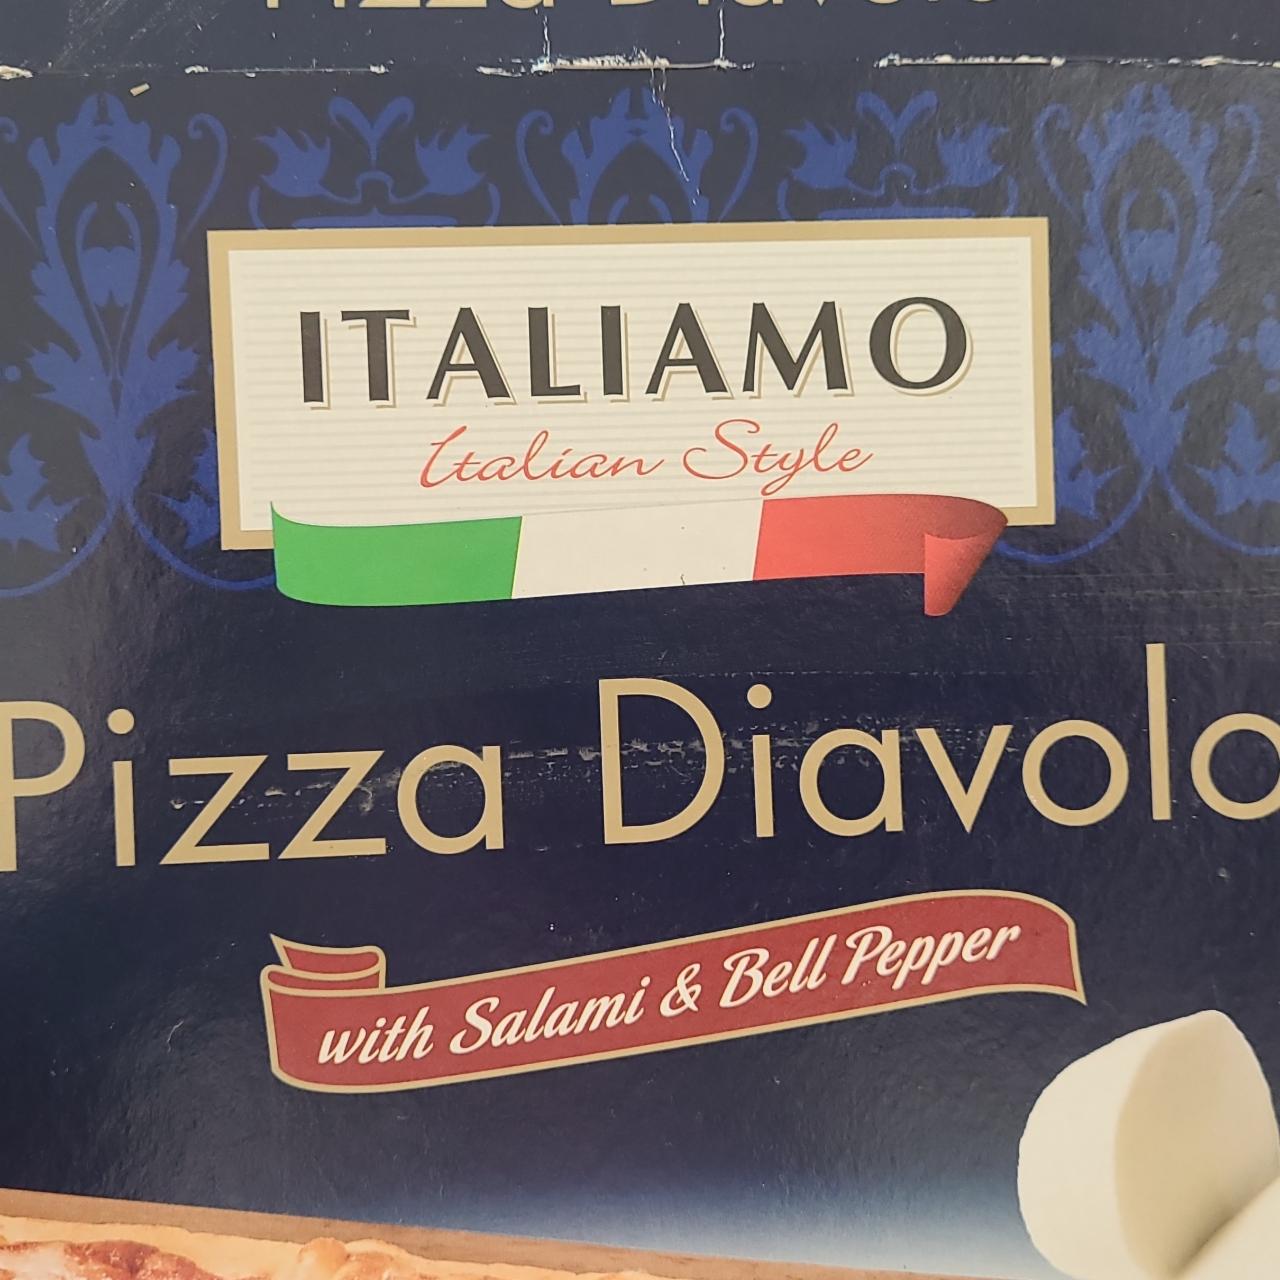 Fotografie - Pizza Diavolo with Salami & Bell Pepper Italiamo